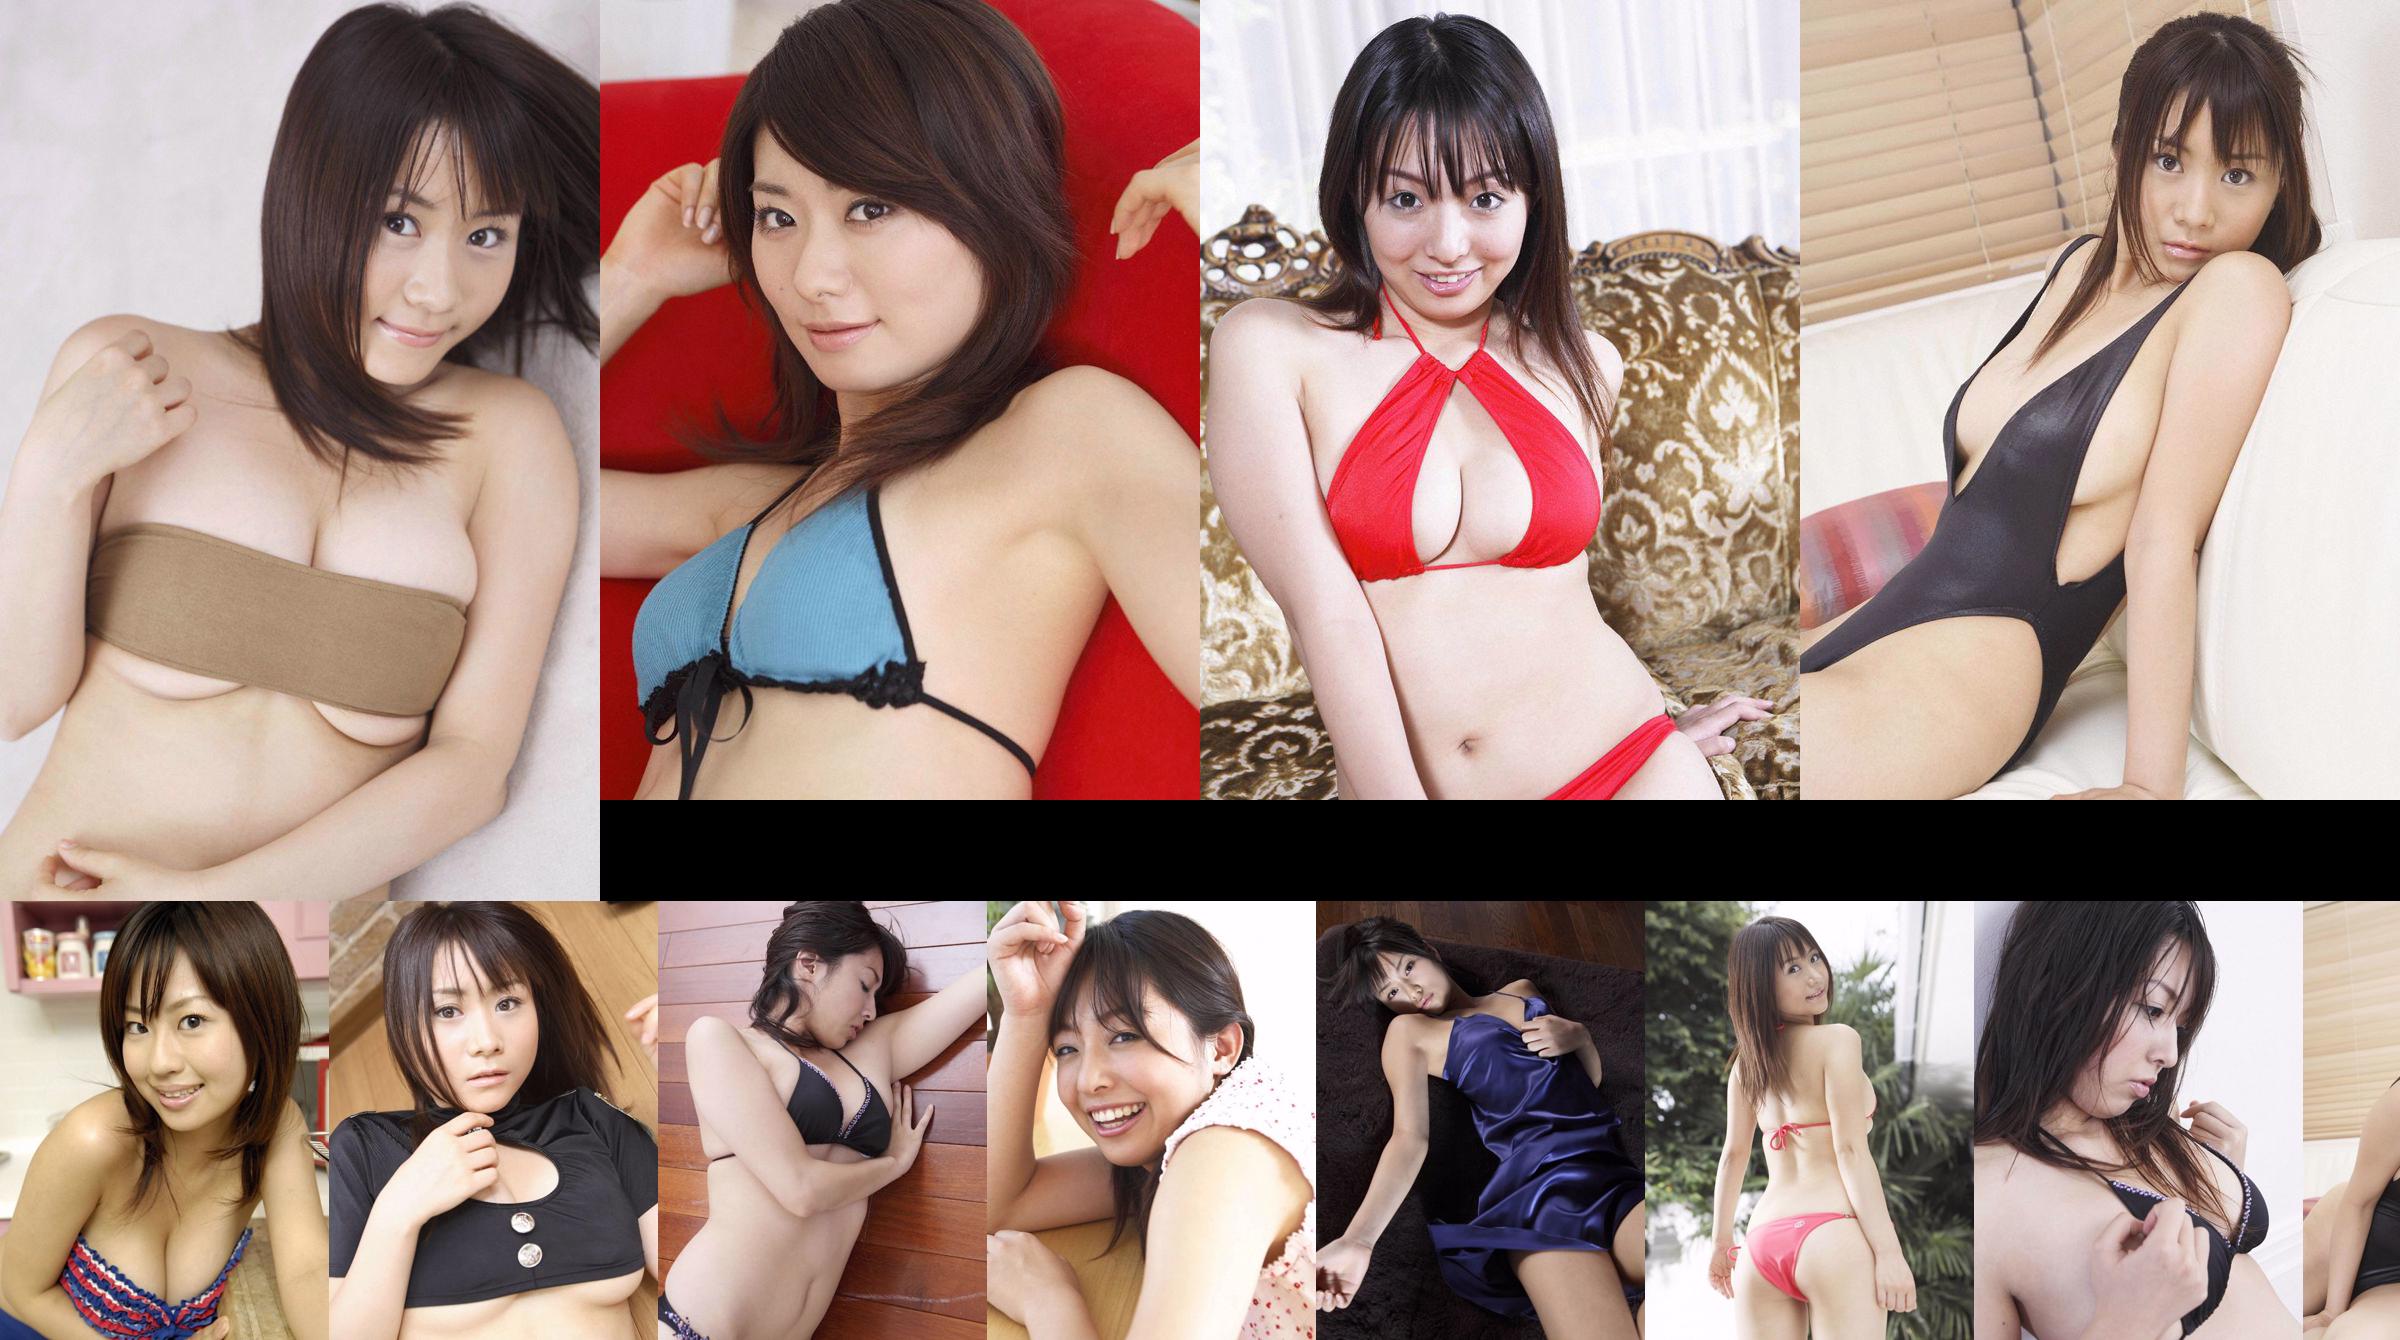 [Wanibooks] NO.37 Ai Arakawa, Hitomi Kaikawa, Hitomi Kitamura, Naomi I, Chii Matsuda Photo Collection No.ee700a Page 2